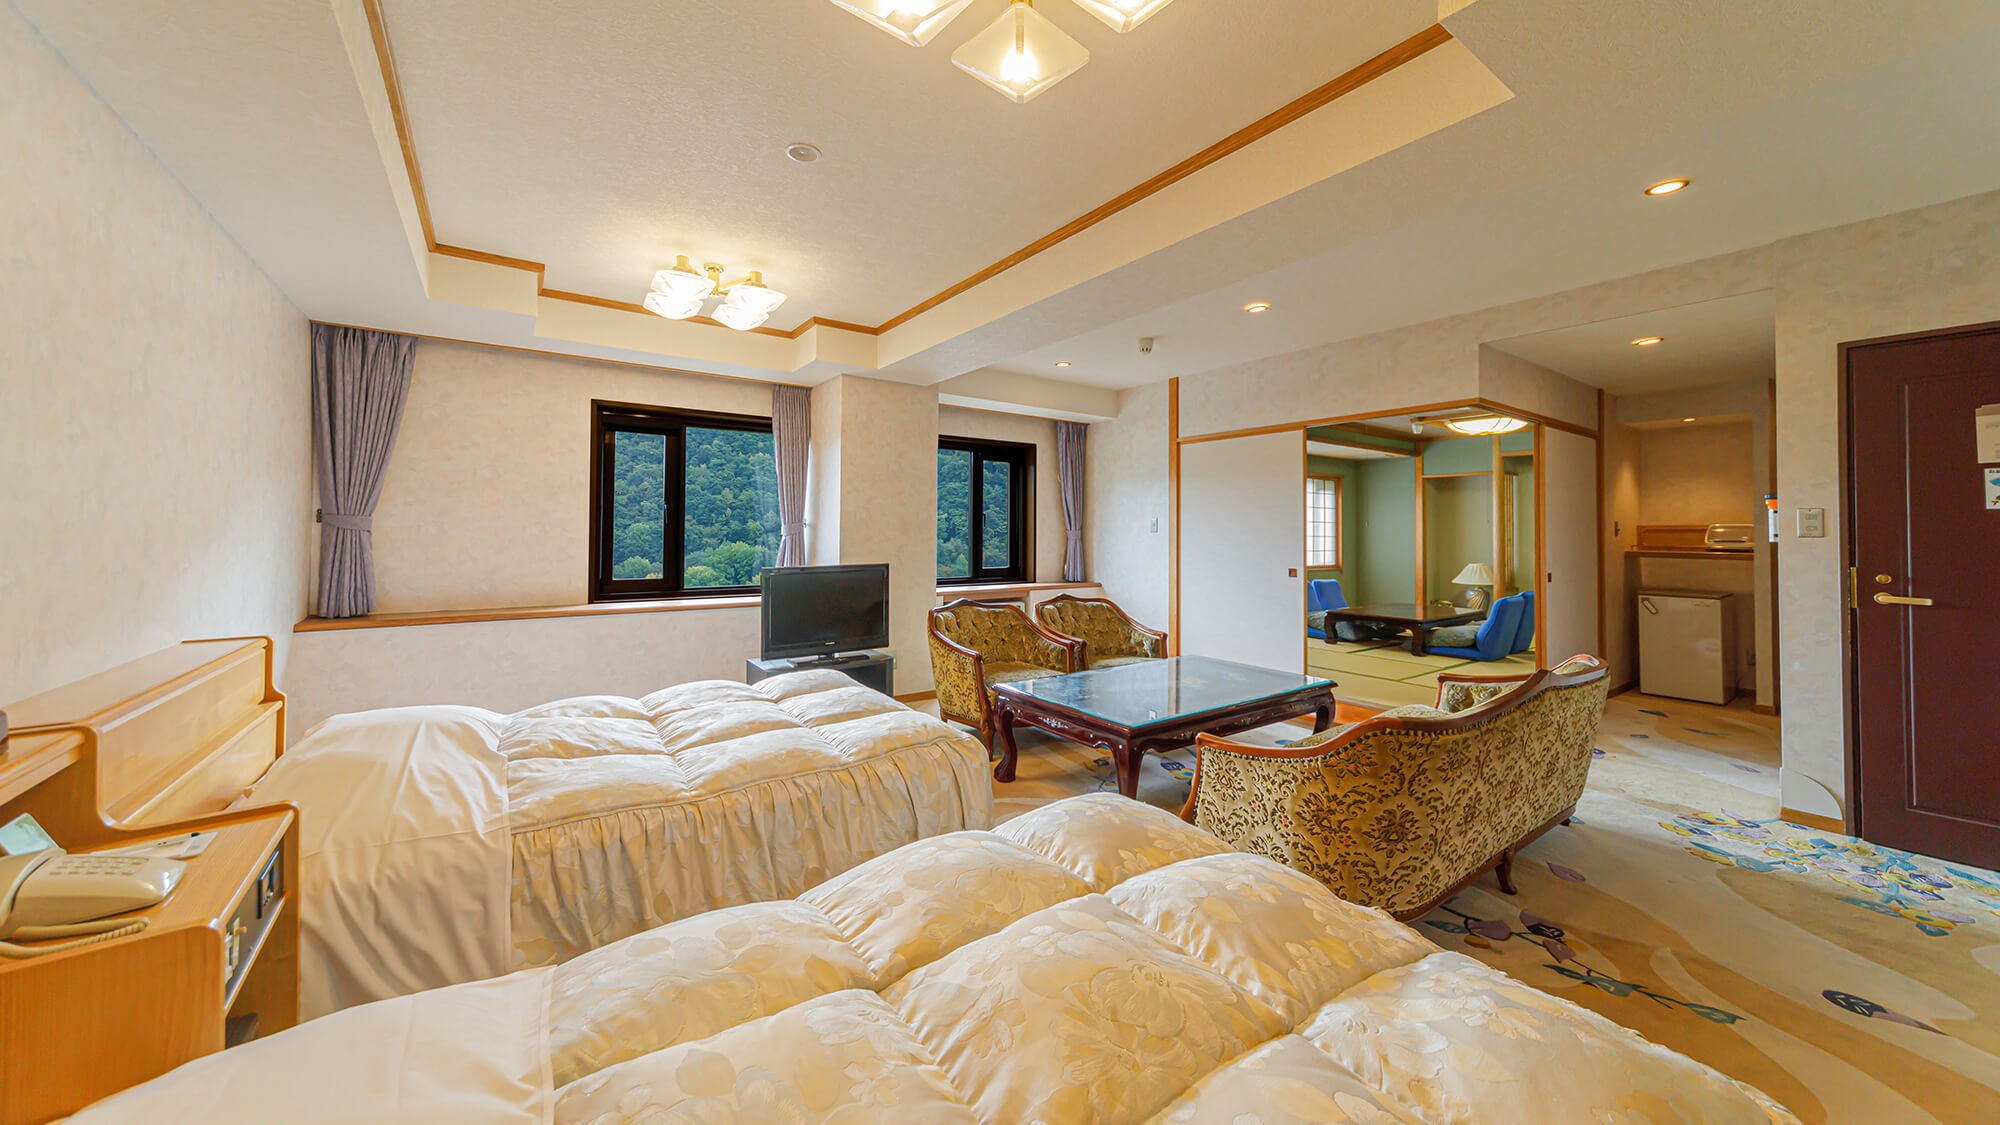 【本館】最上階特別室Cタイプ／10畳和室+ツインベッドの和洋室タイプのお部屋。